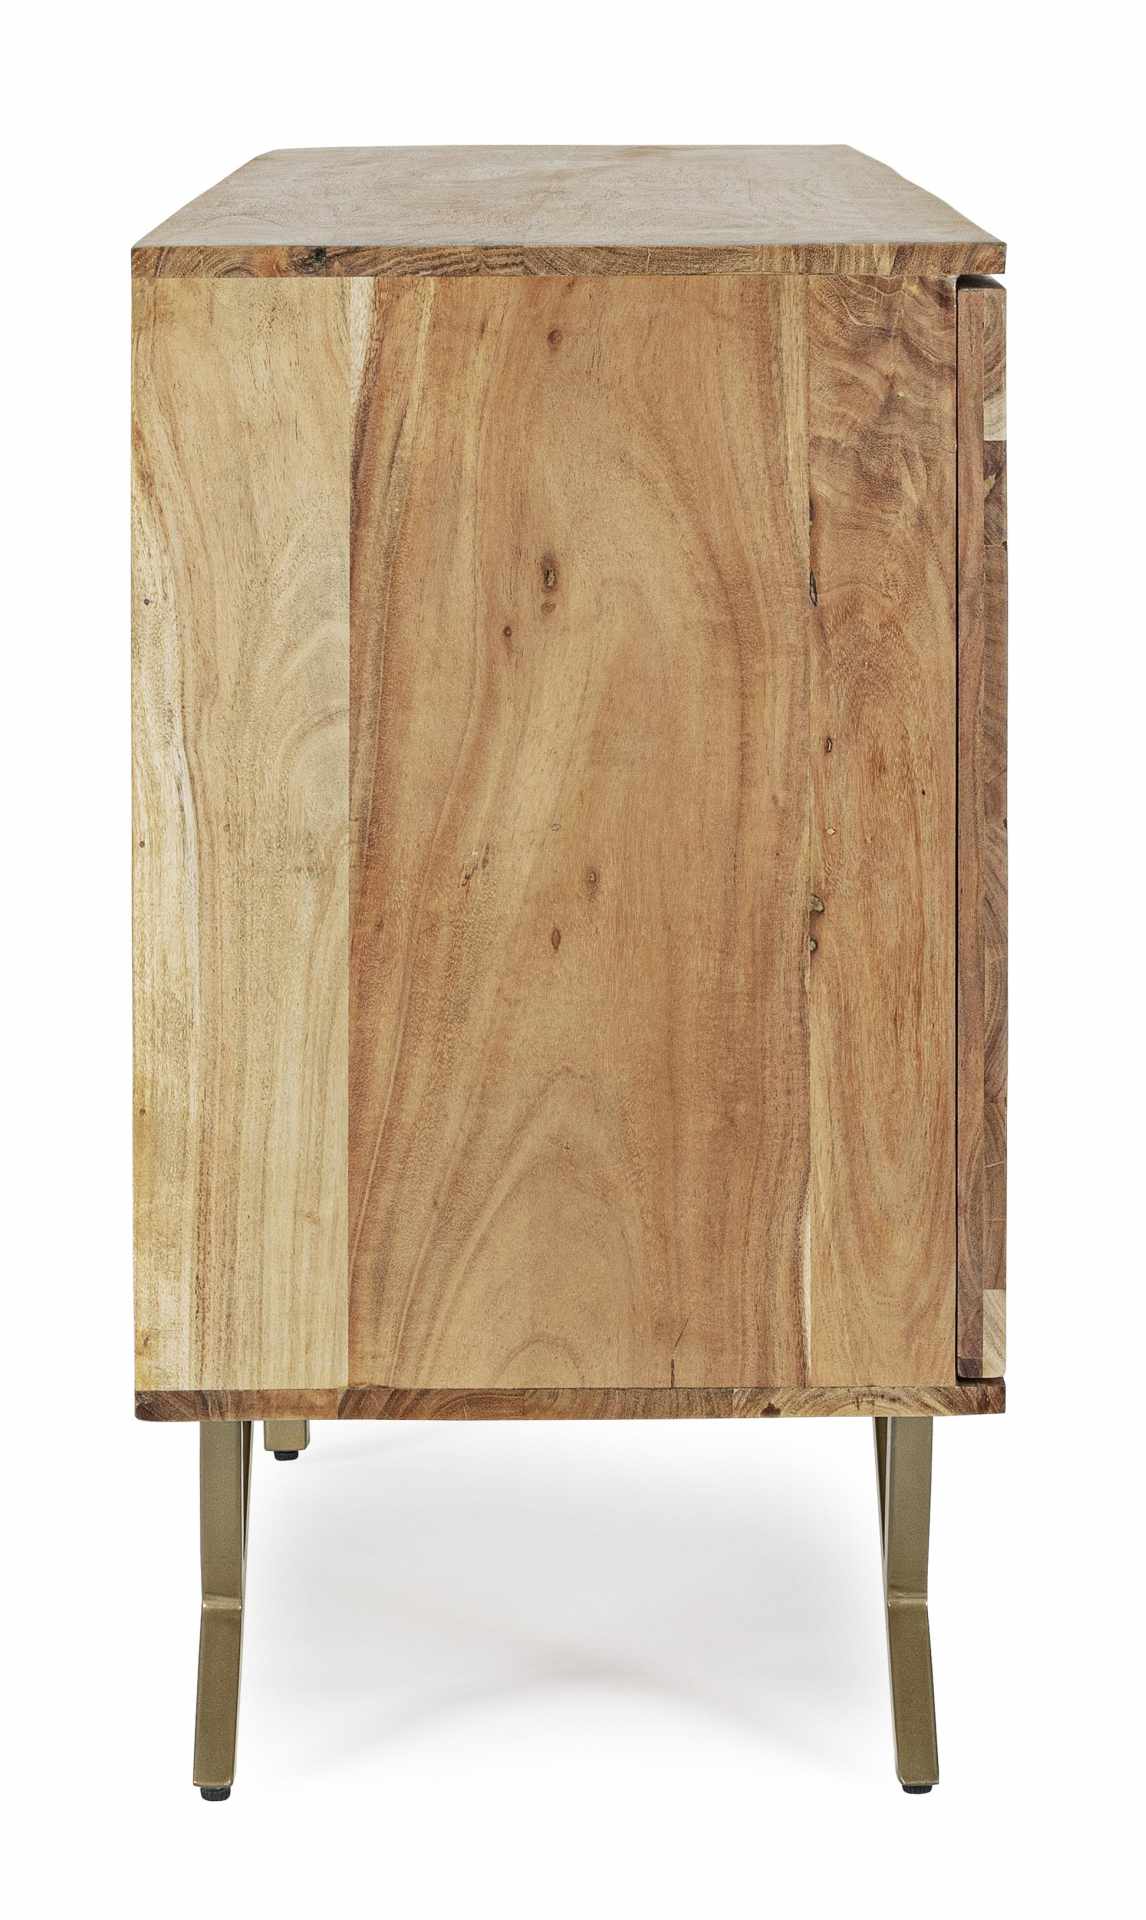 Das Sideboard Raida überzeugt mit seinem modernem Design. Gefertigt wurde es aus Akazien-Holz, welches einen natürlichen Farbton besitzt. Das Gestell ist aus Metall und hat eine goldene Farbe. Das Sideboard verfügt über drei Türen. Die Breite beträgt 160 